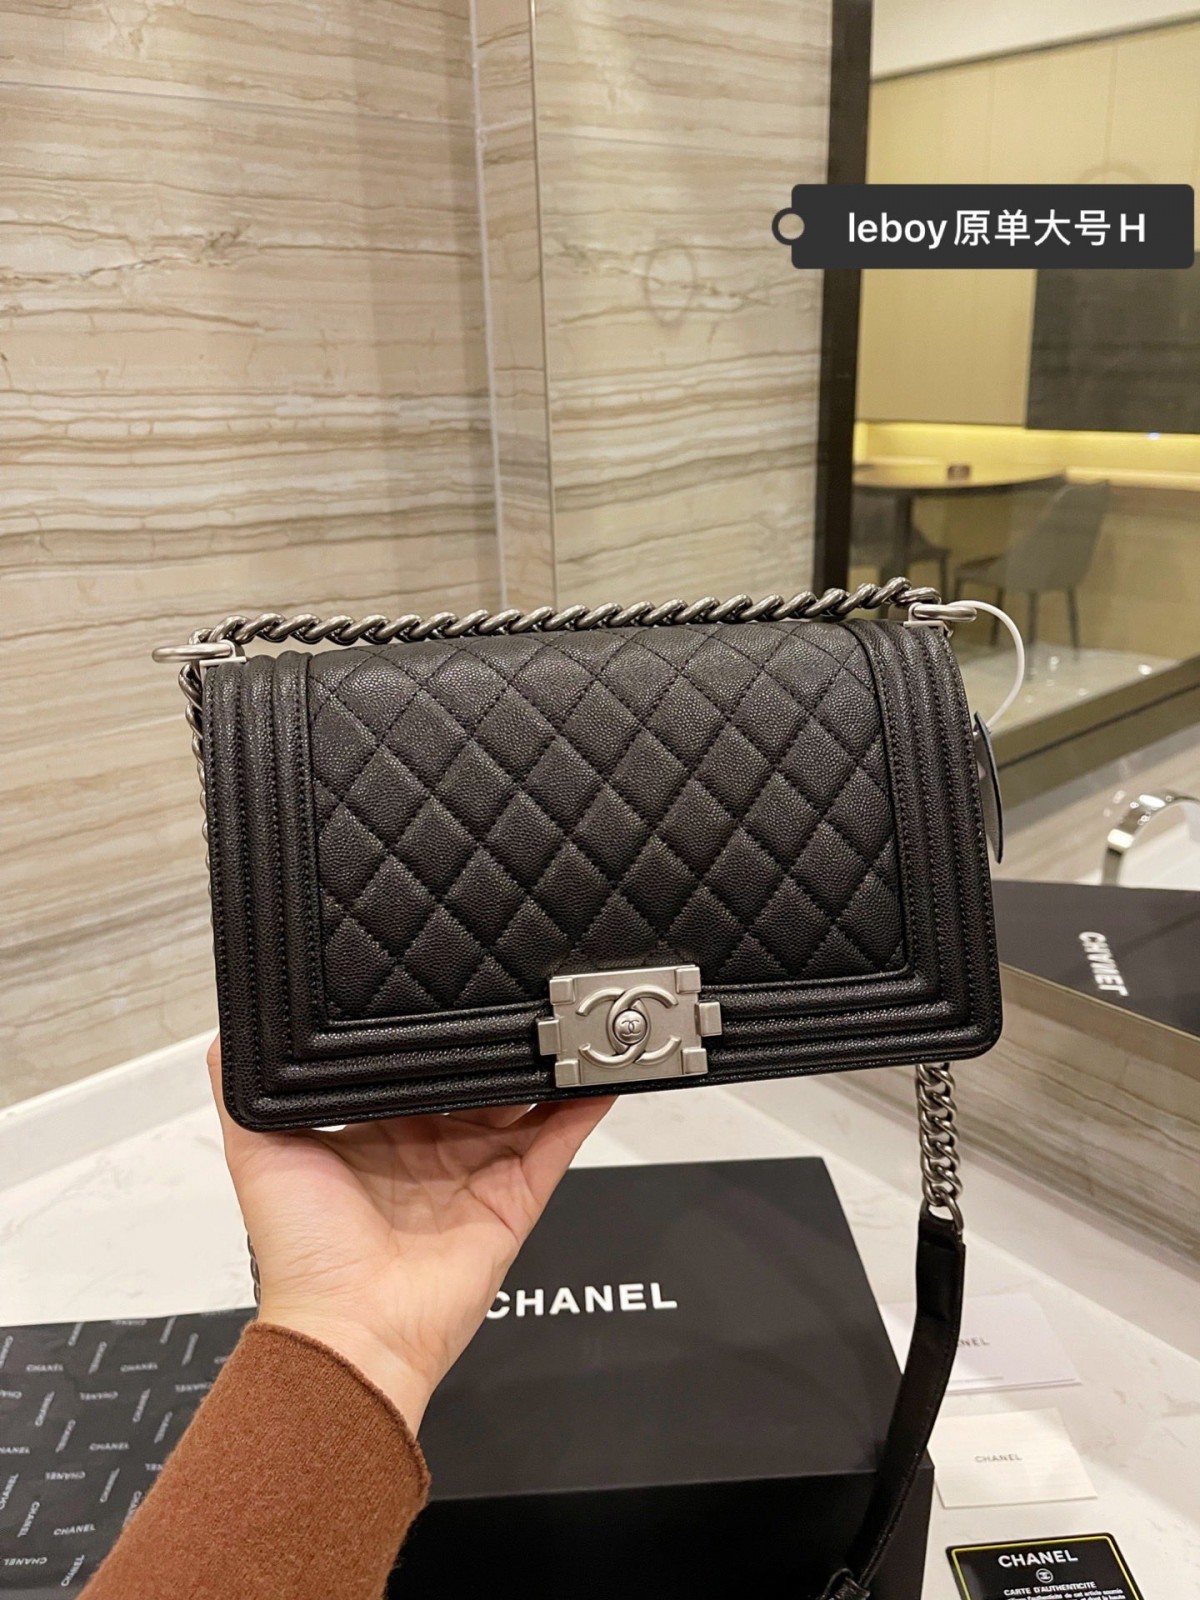 ຫນຶ່ງໃນກະເປົ໋າ replica coolest: Chanel Leboy (2022 ປັບປຸງ) - ຄຸນະພາບດີທີ່ສຸດ ຖົງ Louis Vuitton ປອມຮ້ານອອນໄລນ໌, Replica designer bag ru